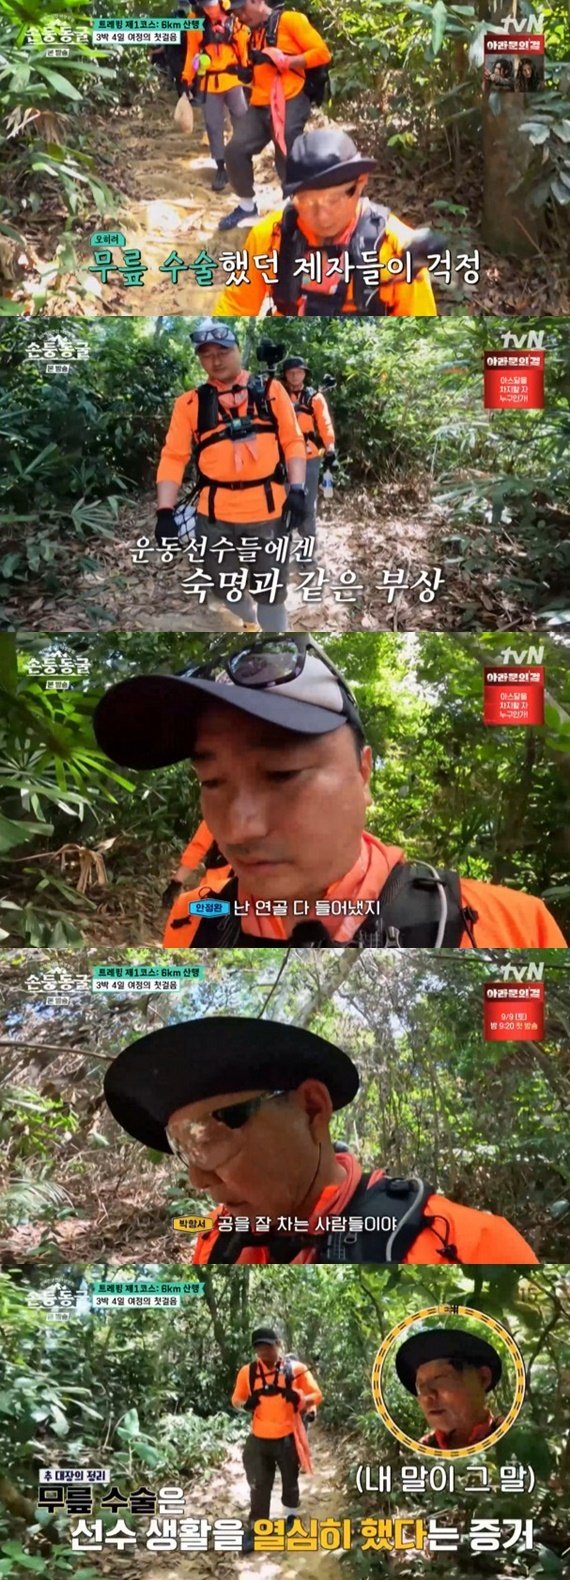 tvN '삼백만 년 전 야생 탐험 : 손둥 동굴' 캡처